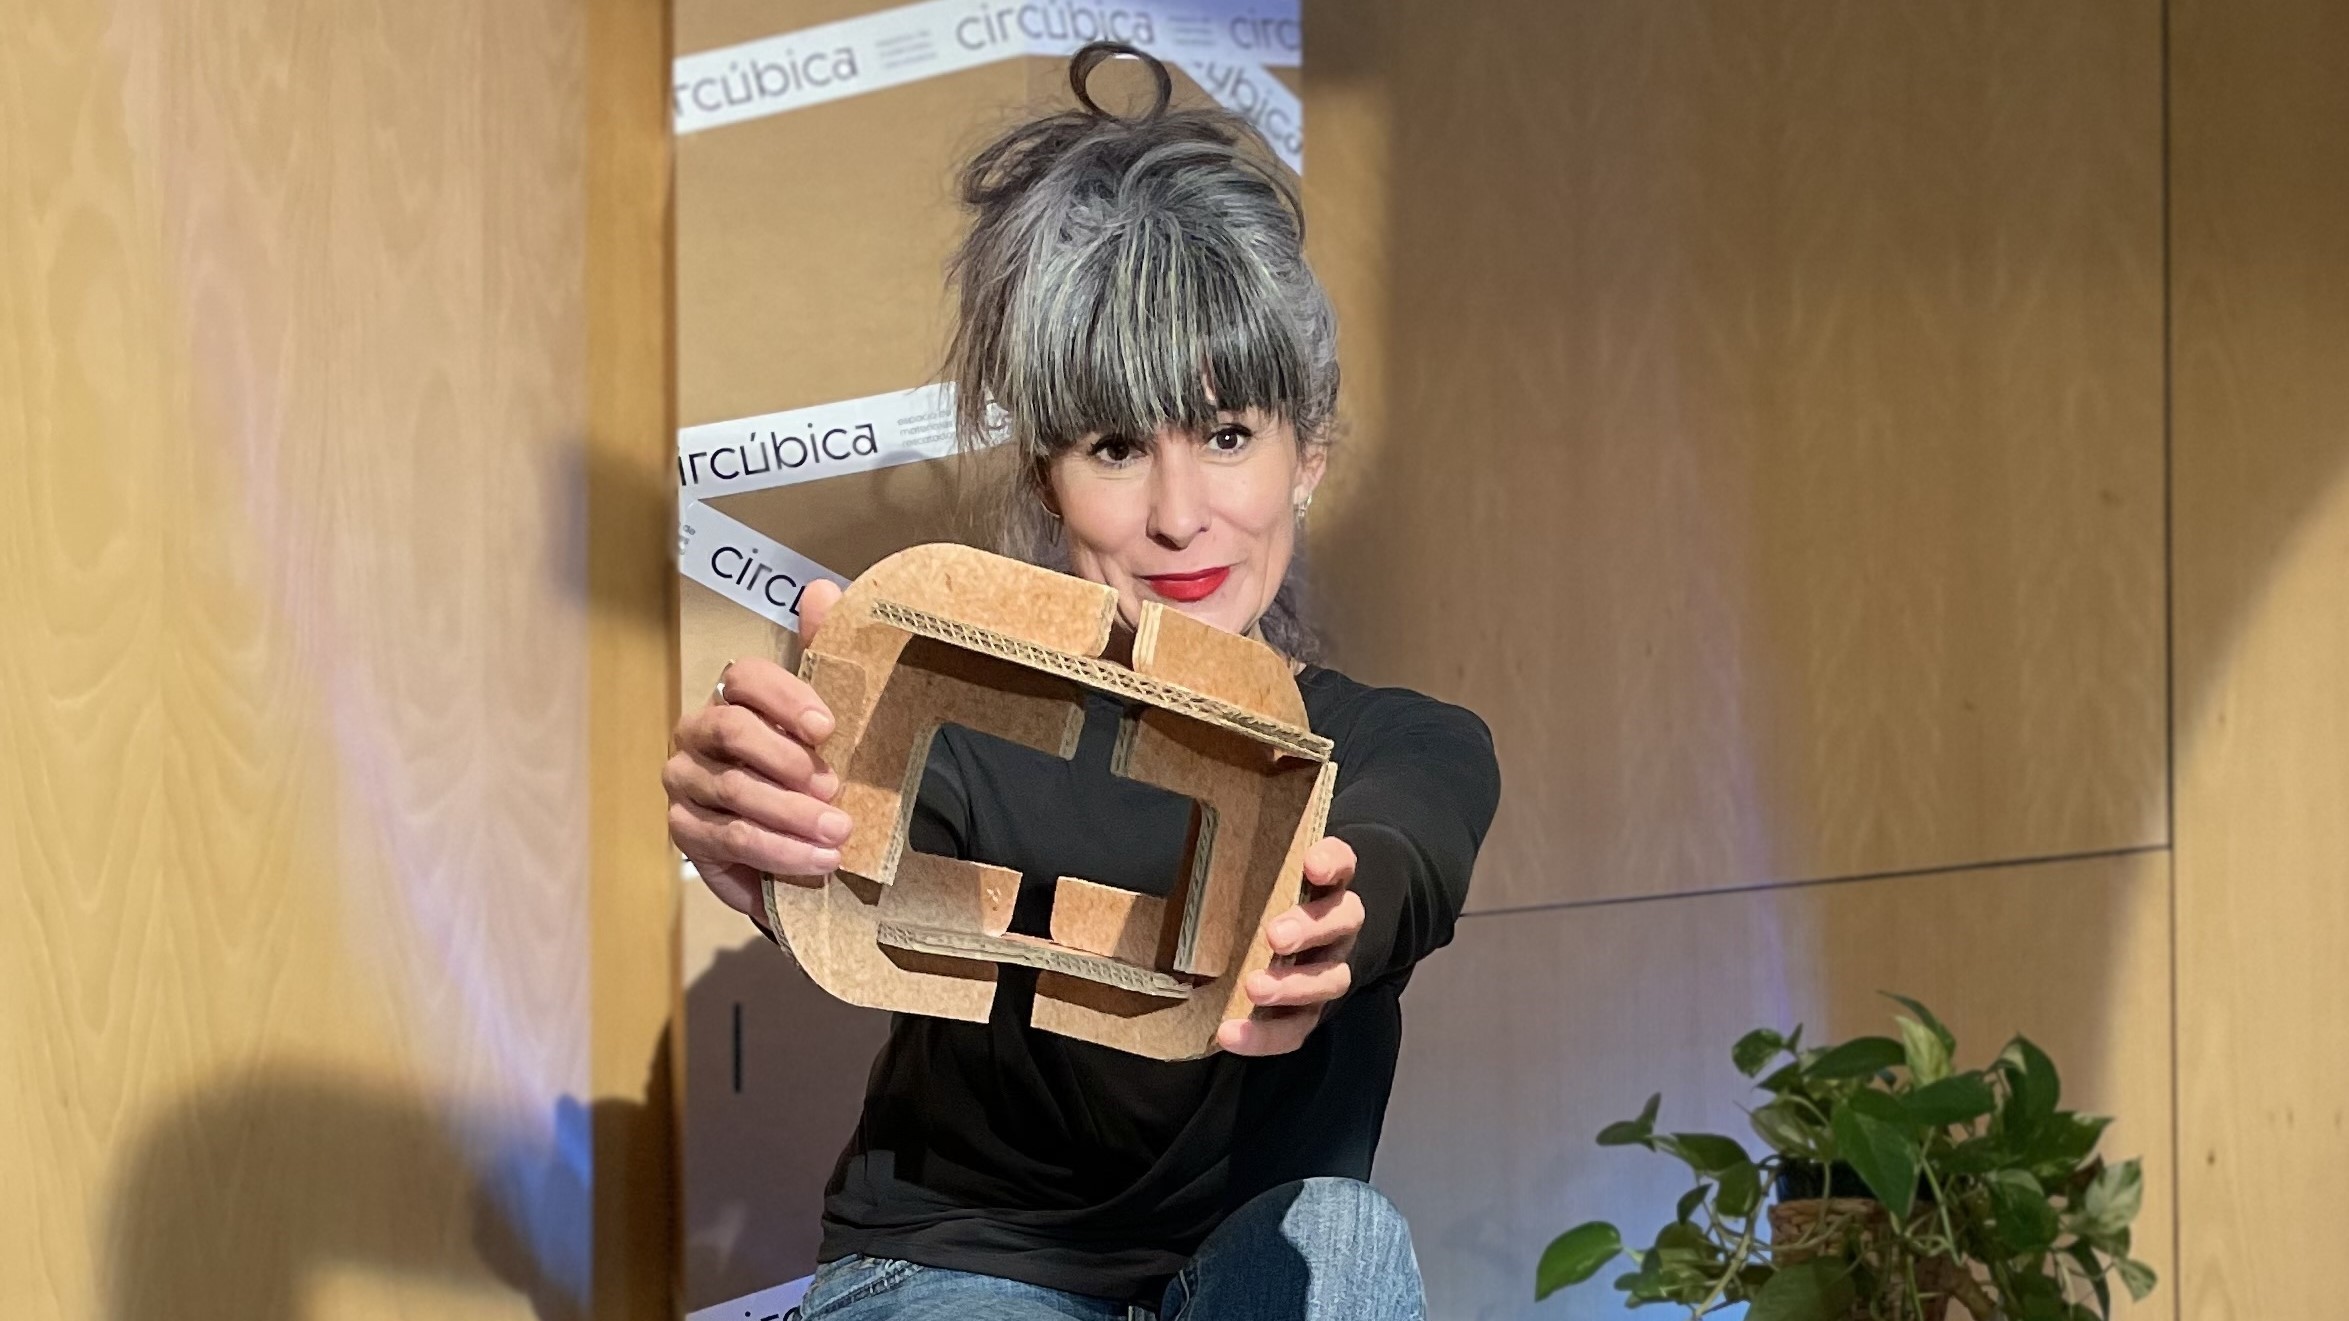 Circúbica prepara la primera 'recicloteca' española con desechos industriales como material didáctico